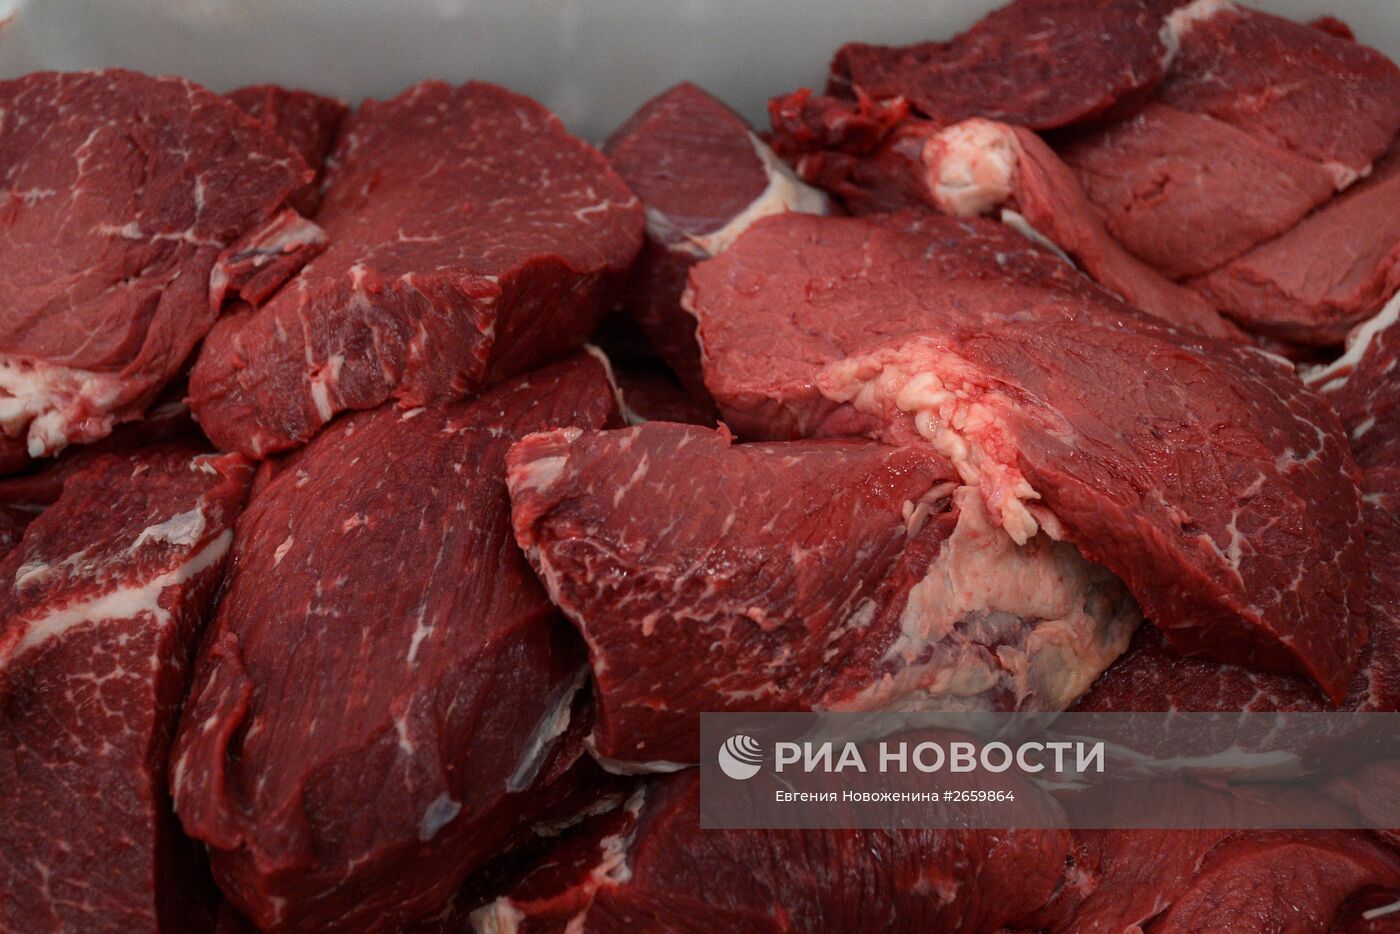 Мясоперерабатывающее предприятие АПХ "Мираторг" в Брянской области